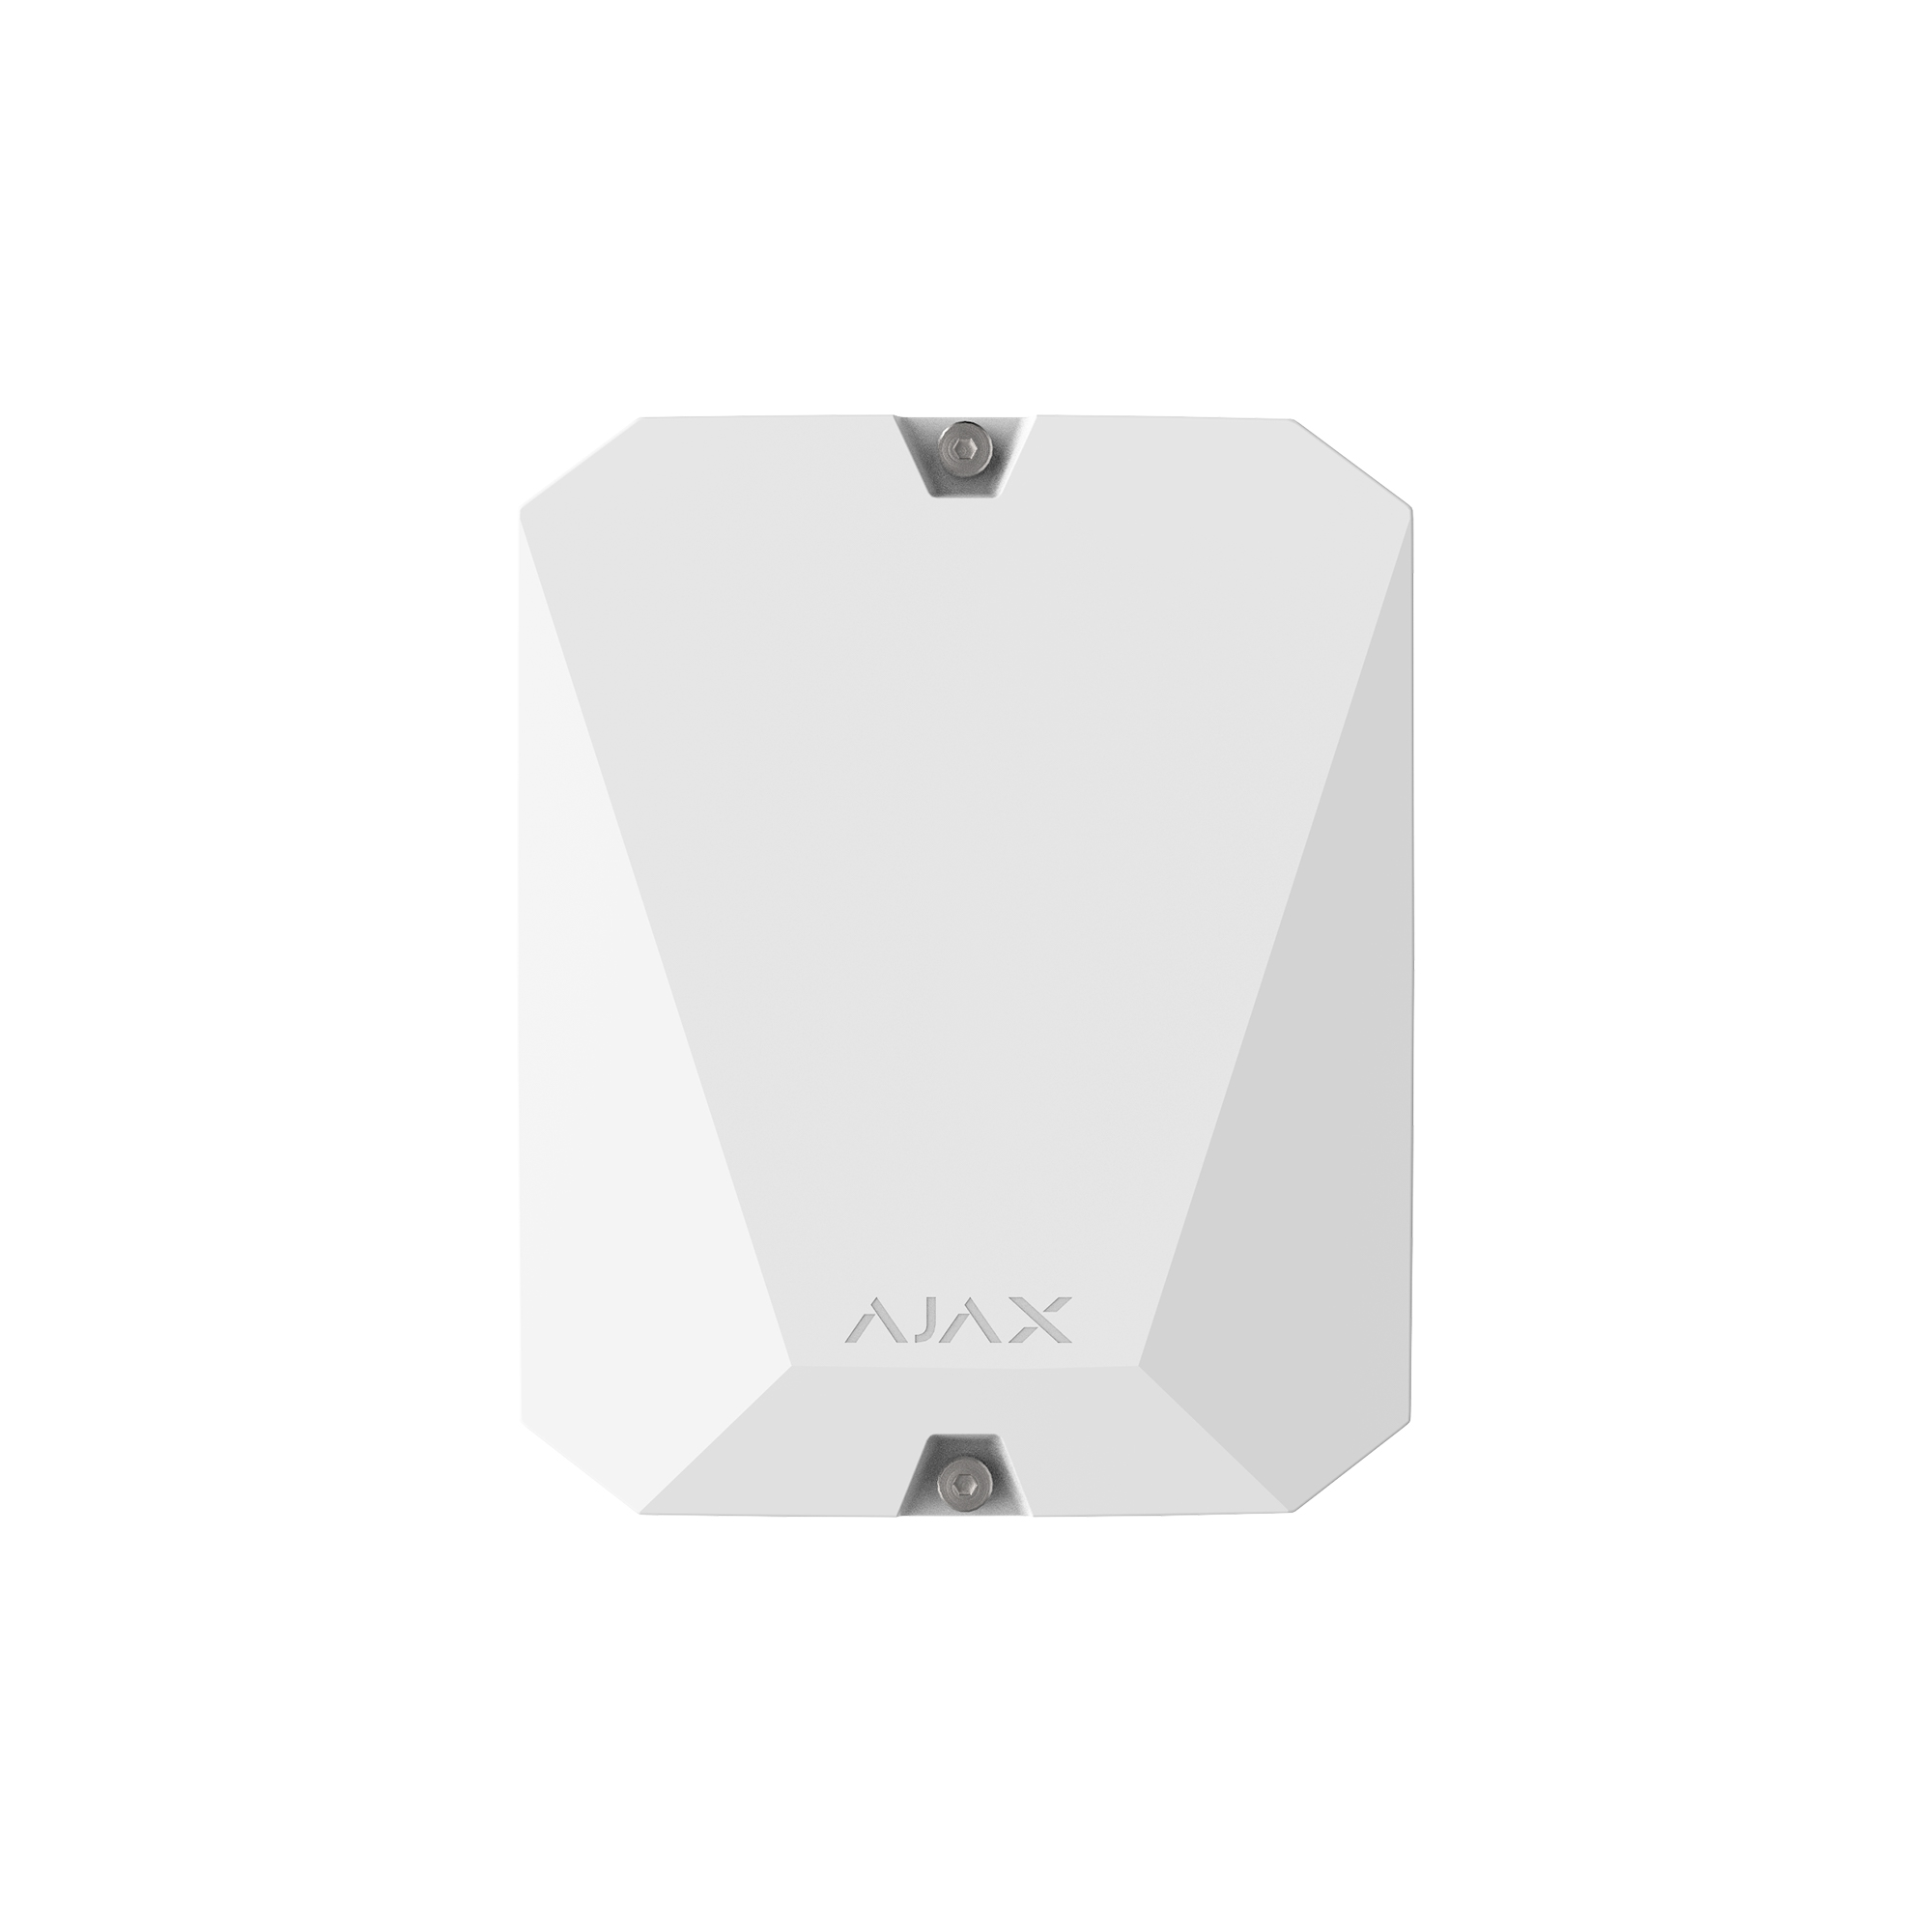 Ajax vhfBridge(8EU) ASP white 